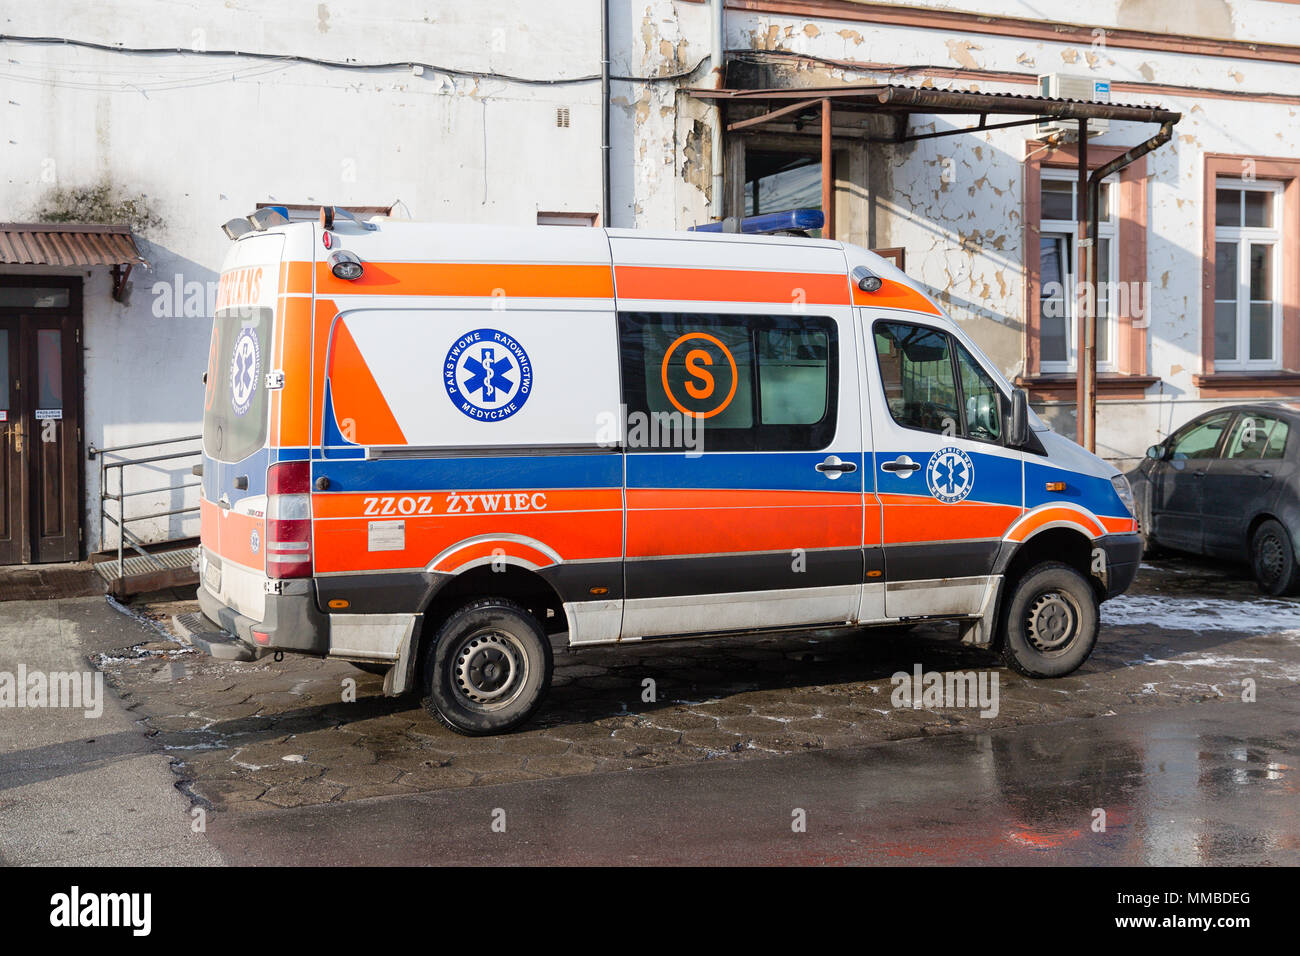 Geparkten Krankenwagen an der County Hospital in Zywiec, Polen. Medizinische Rettung Fahrzeug. Krankenhaus Rettungsdienst. Stockfoto